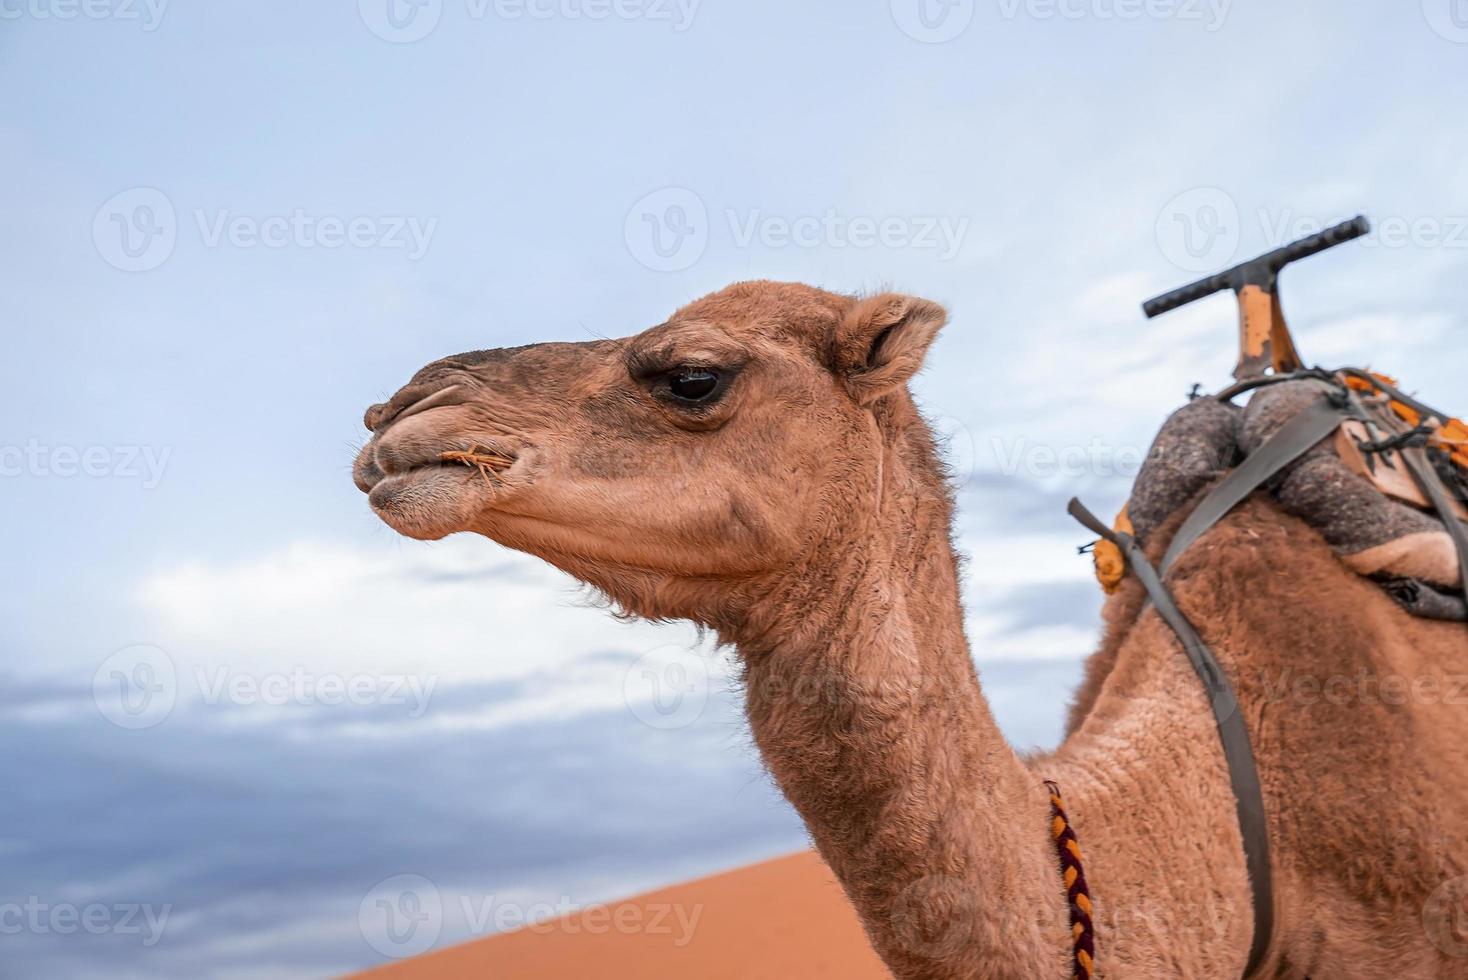 camellos marrones dromedarios comiendo hierba en el desierto contra el cielo nublado foto